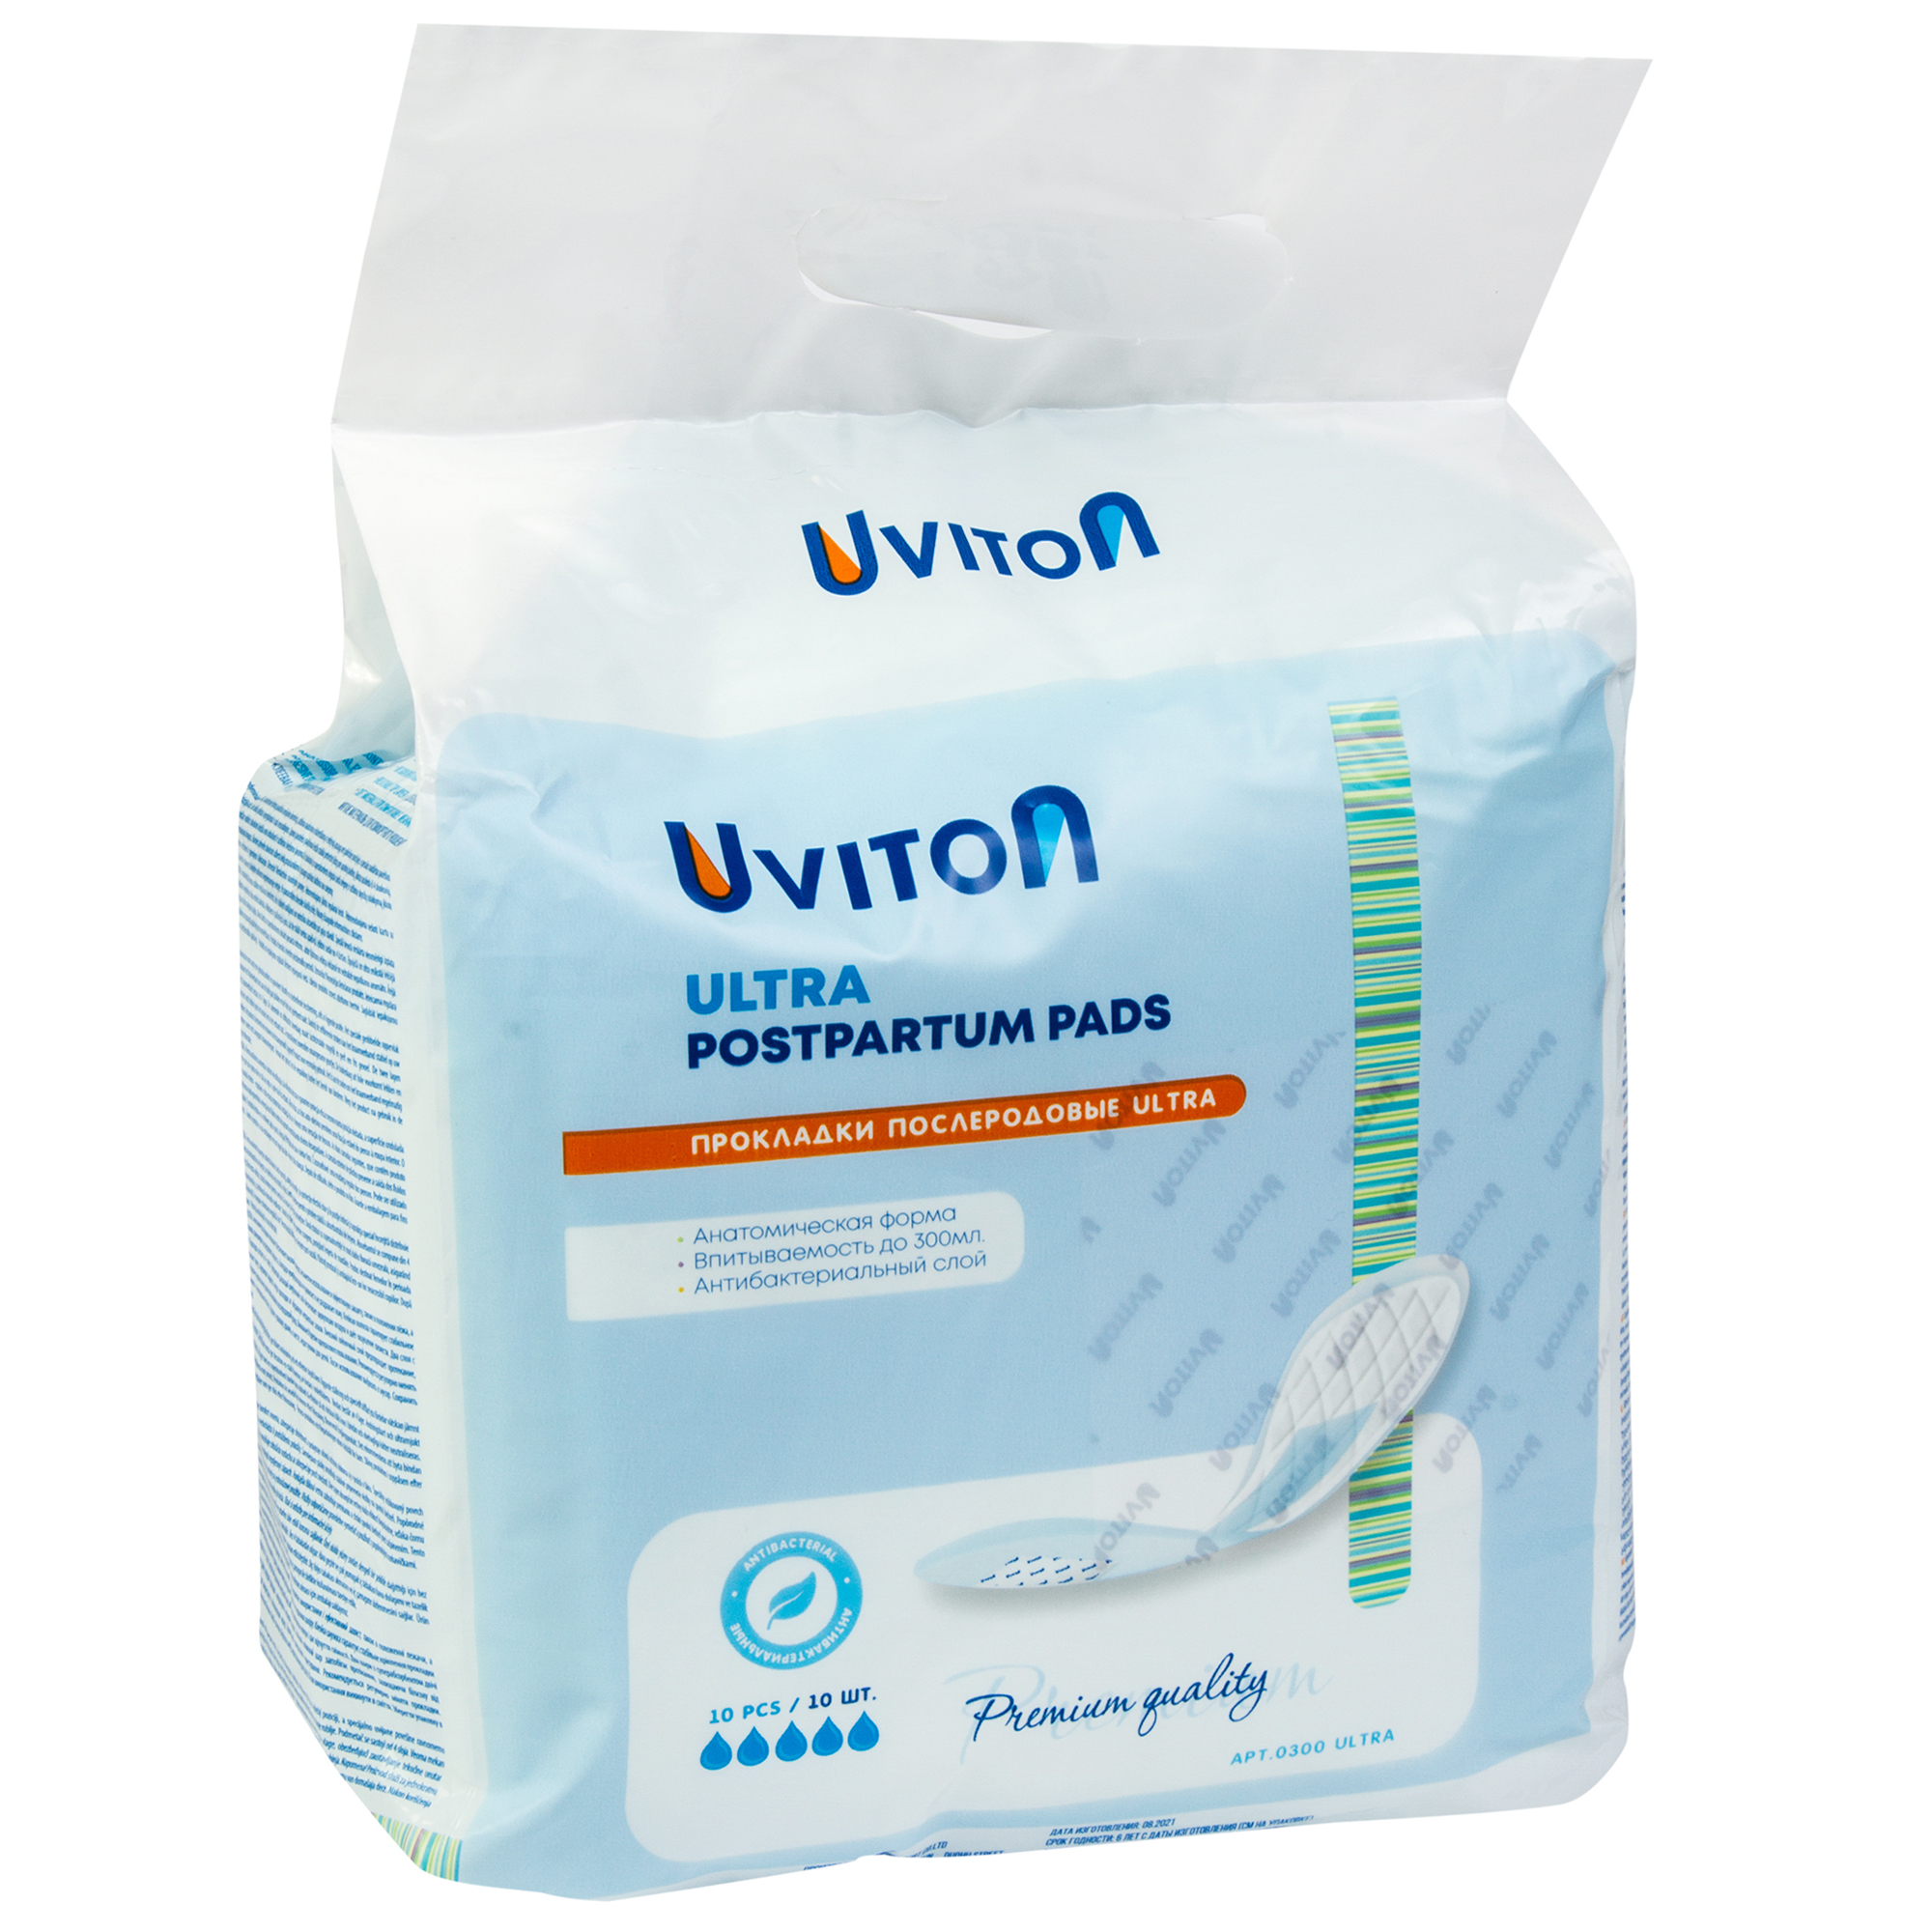 Прокладки Uviton послеродовые ультравпитывающие Ultra арт.0300 - фото 1